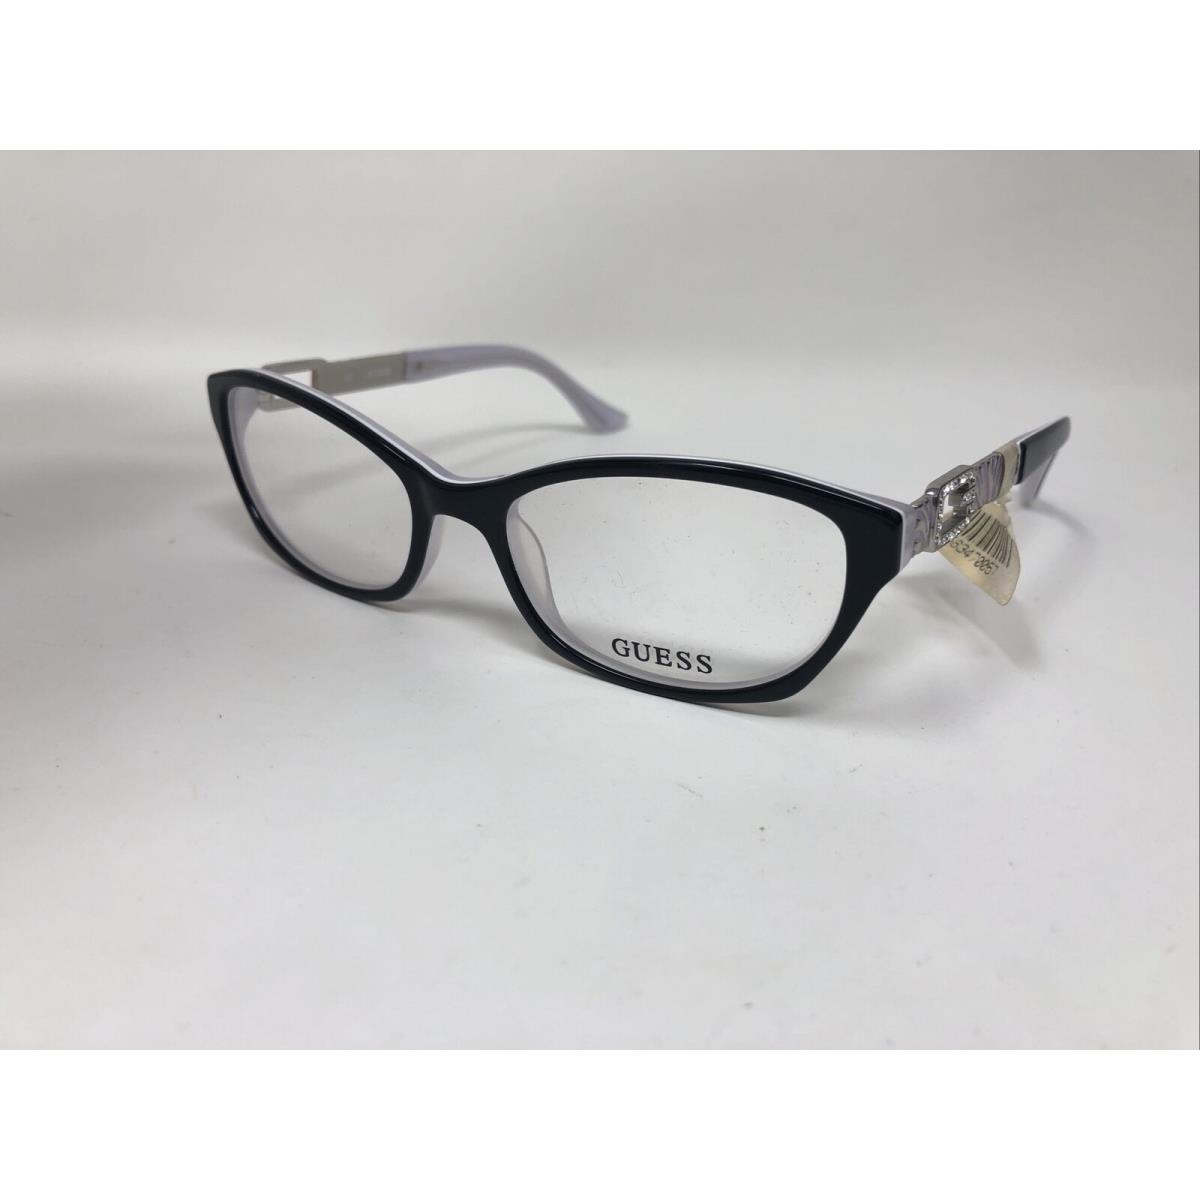 Guess eyeglasses BLK - Black Frame 1